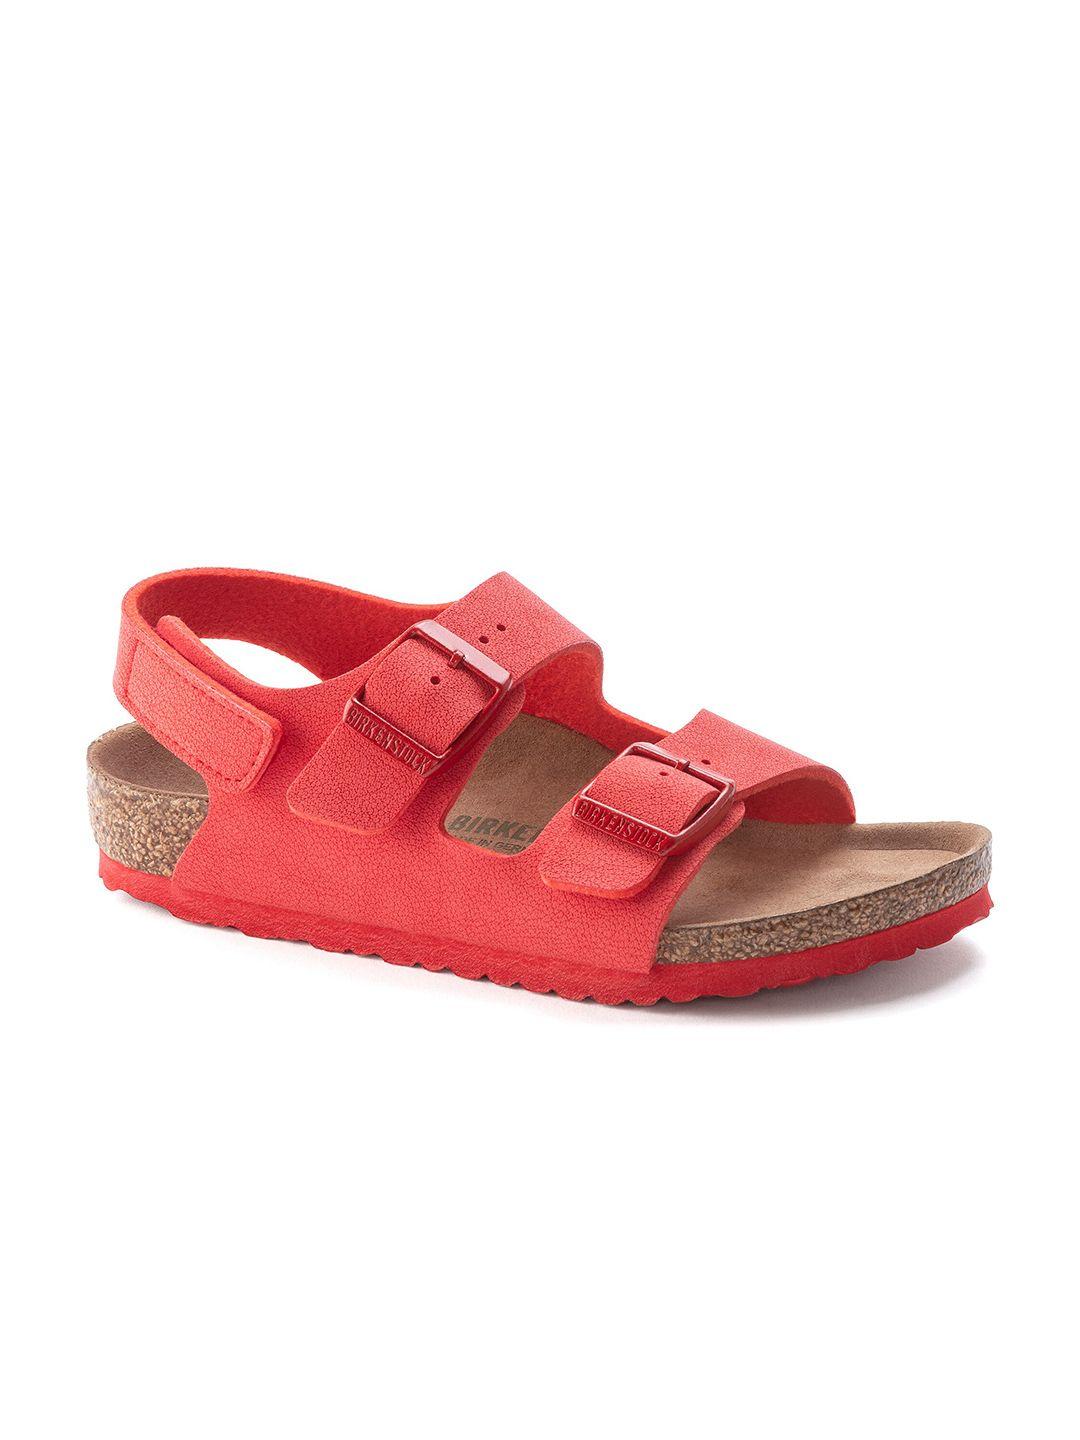 birkenstock boys red milano narrow width comfort sandals